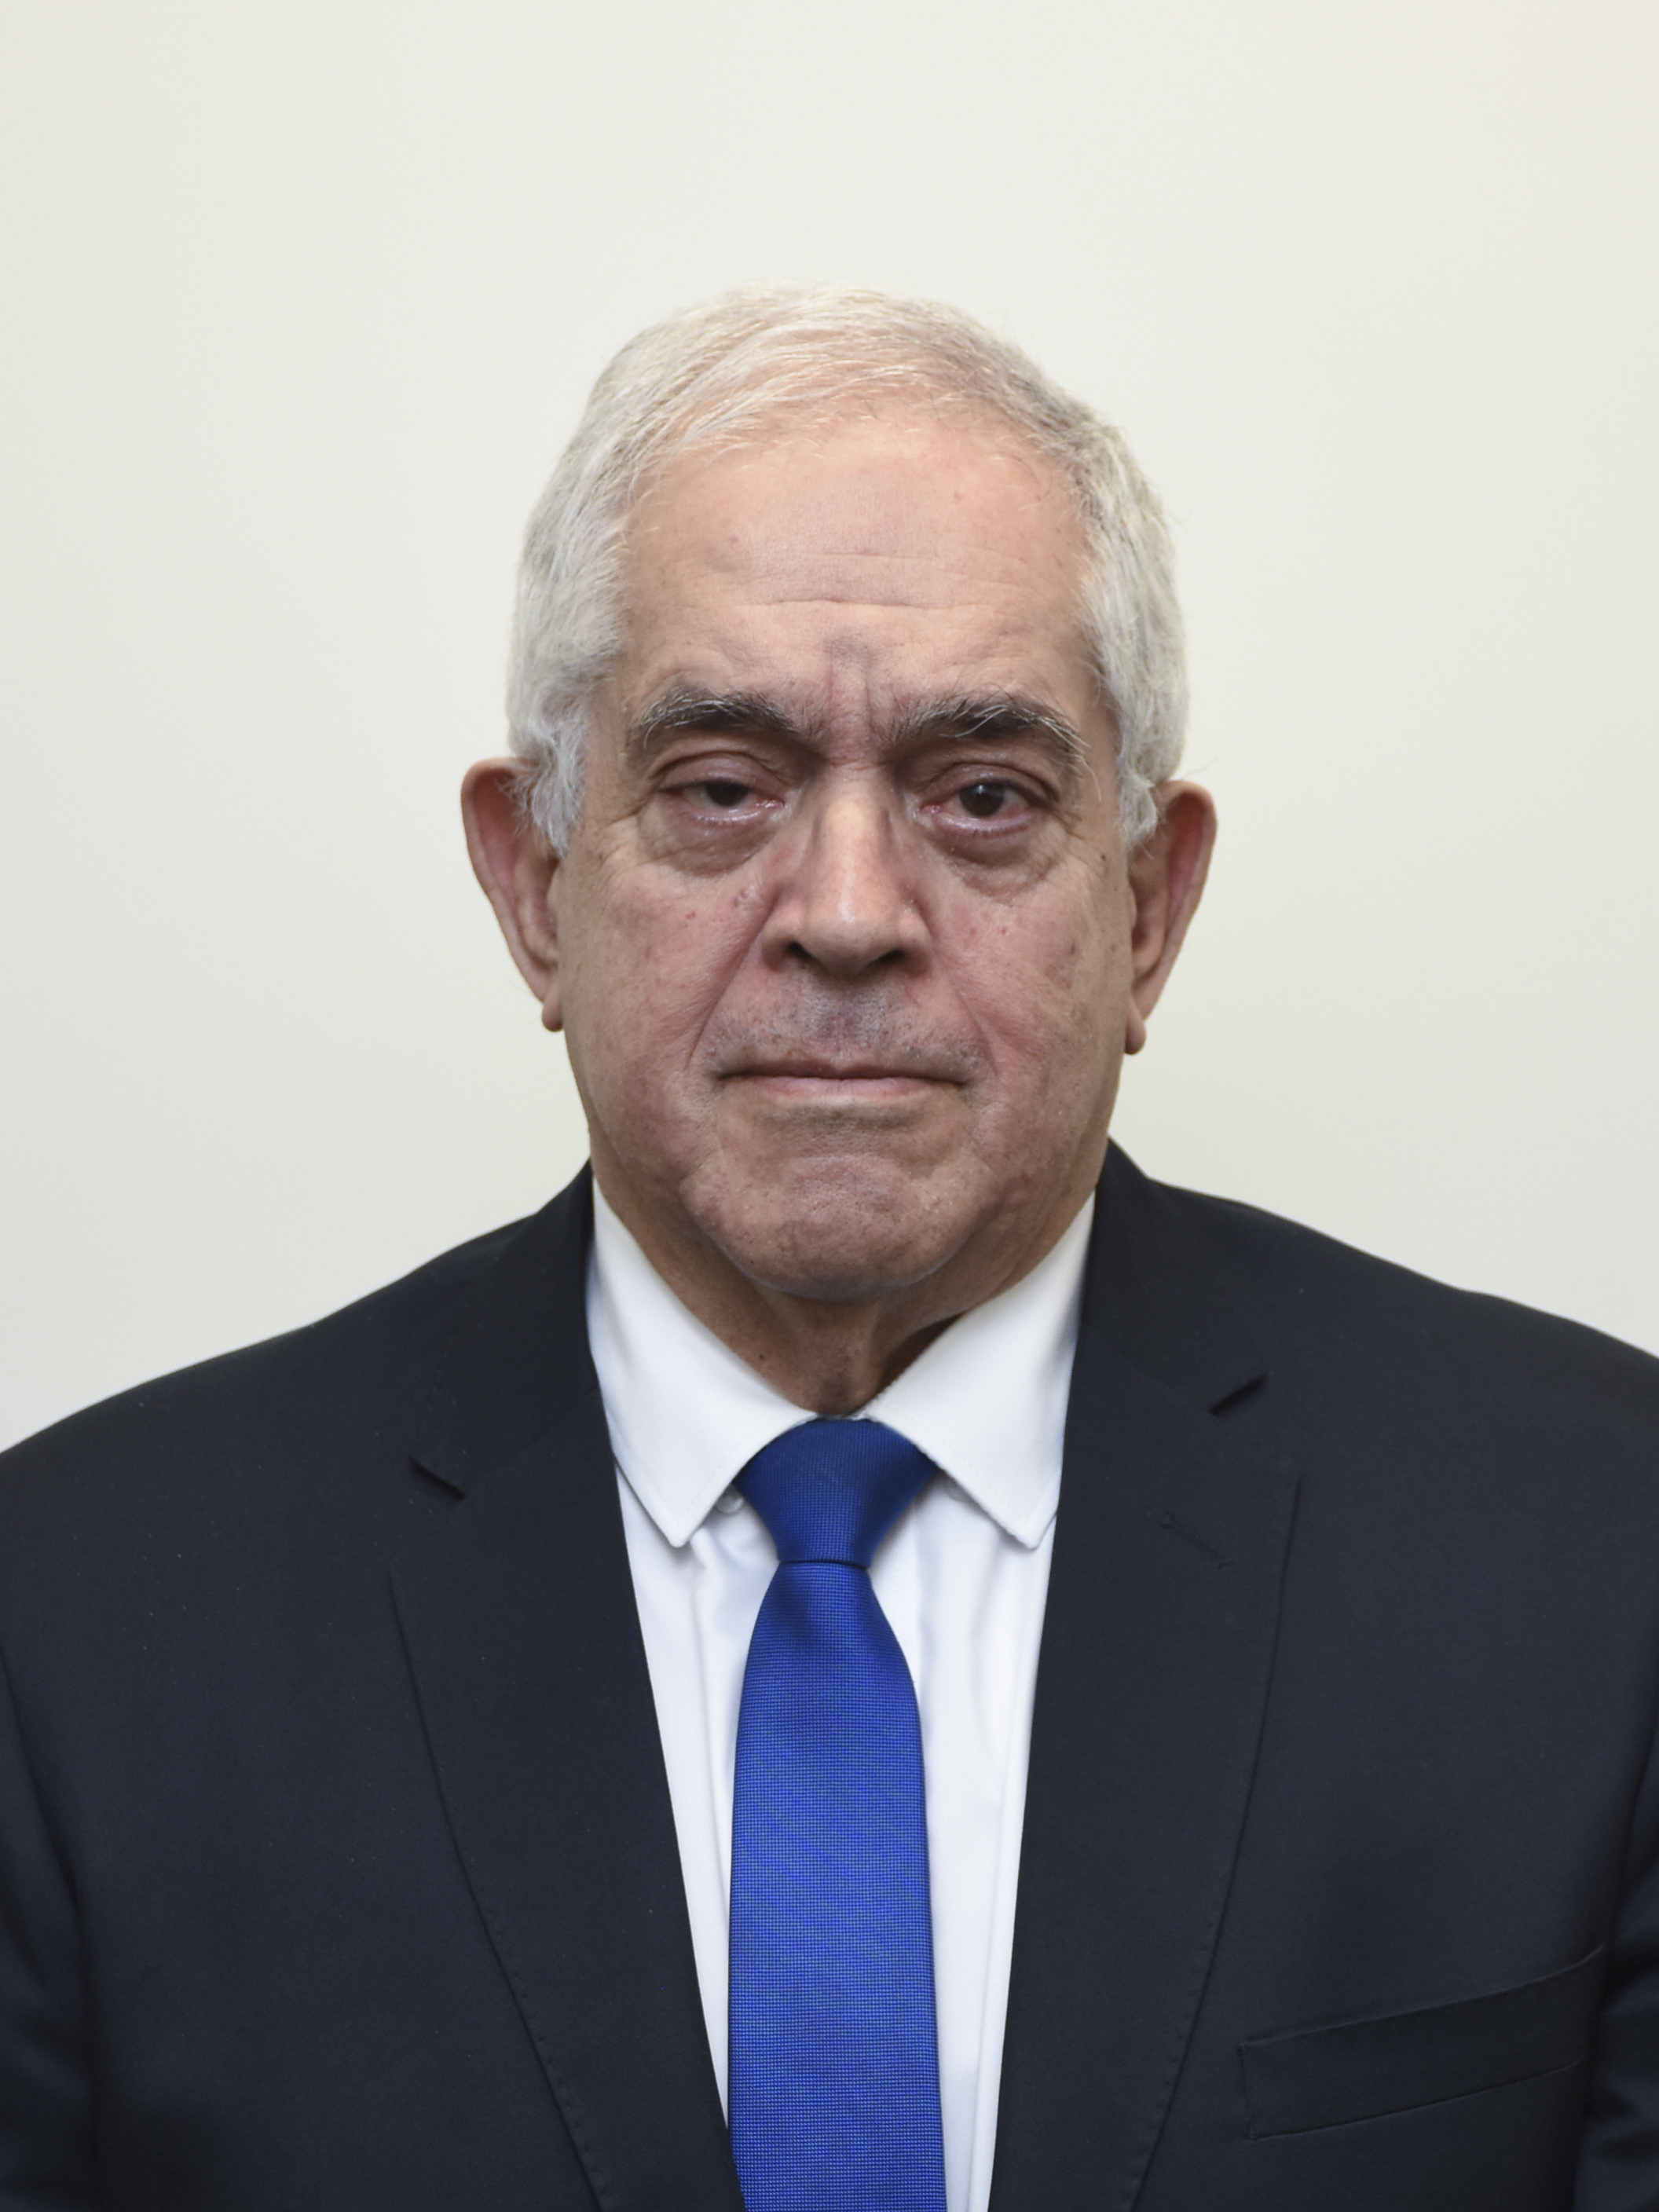 Foto do Desembargador do Tribunal de Justiça do Estado de Minas Gerais, desde 11/11/2021. Marco Aurélio Ferrara Marcolino